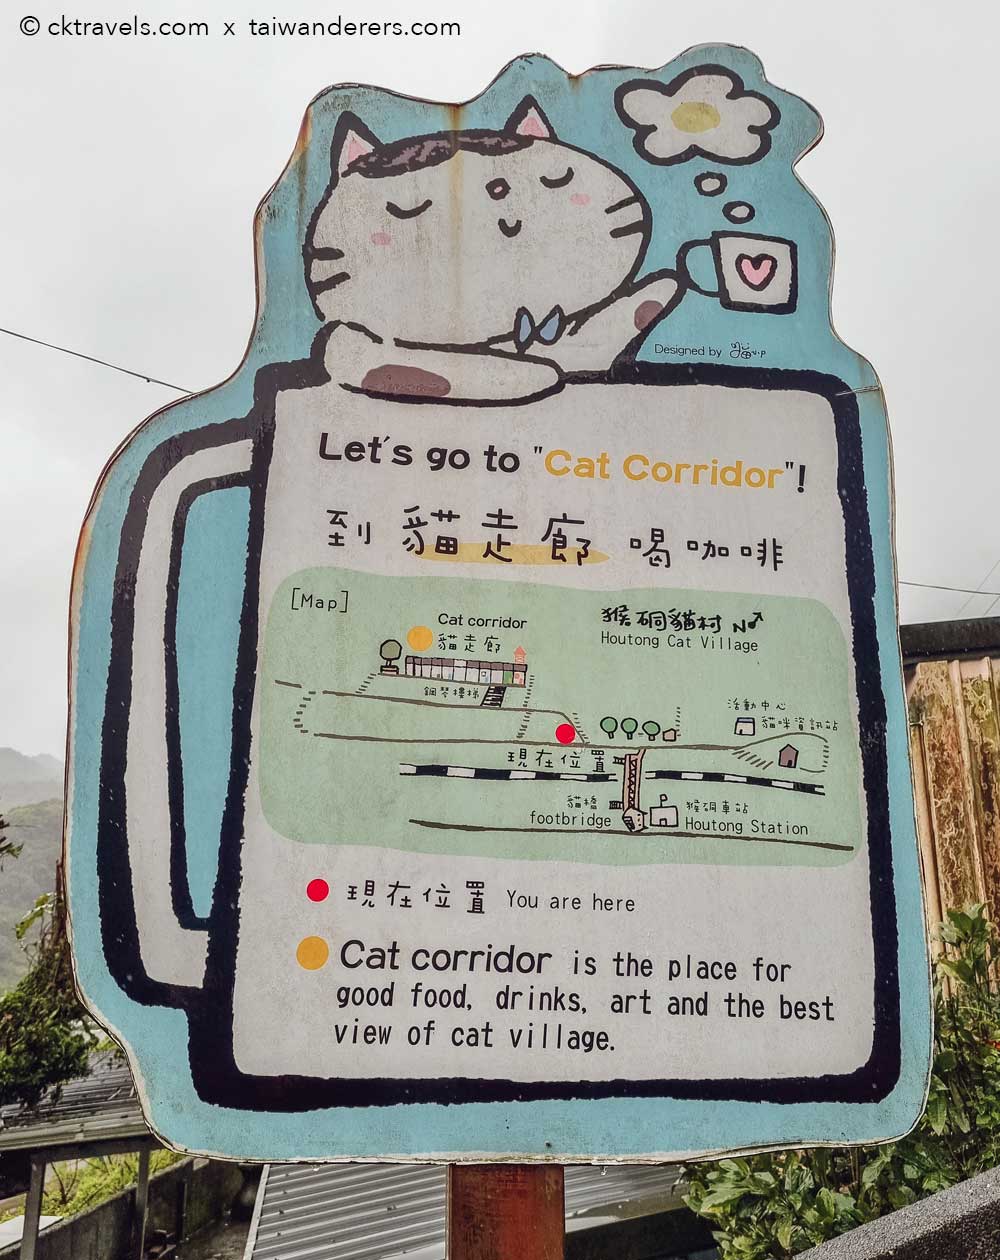 Houtong Cat Village cat corridor